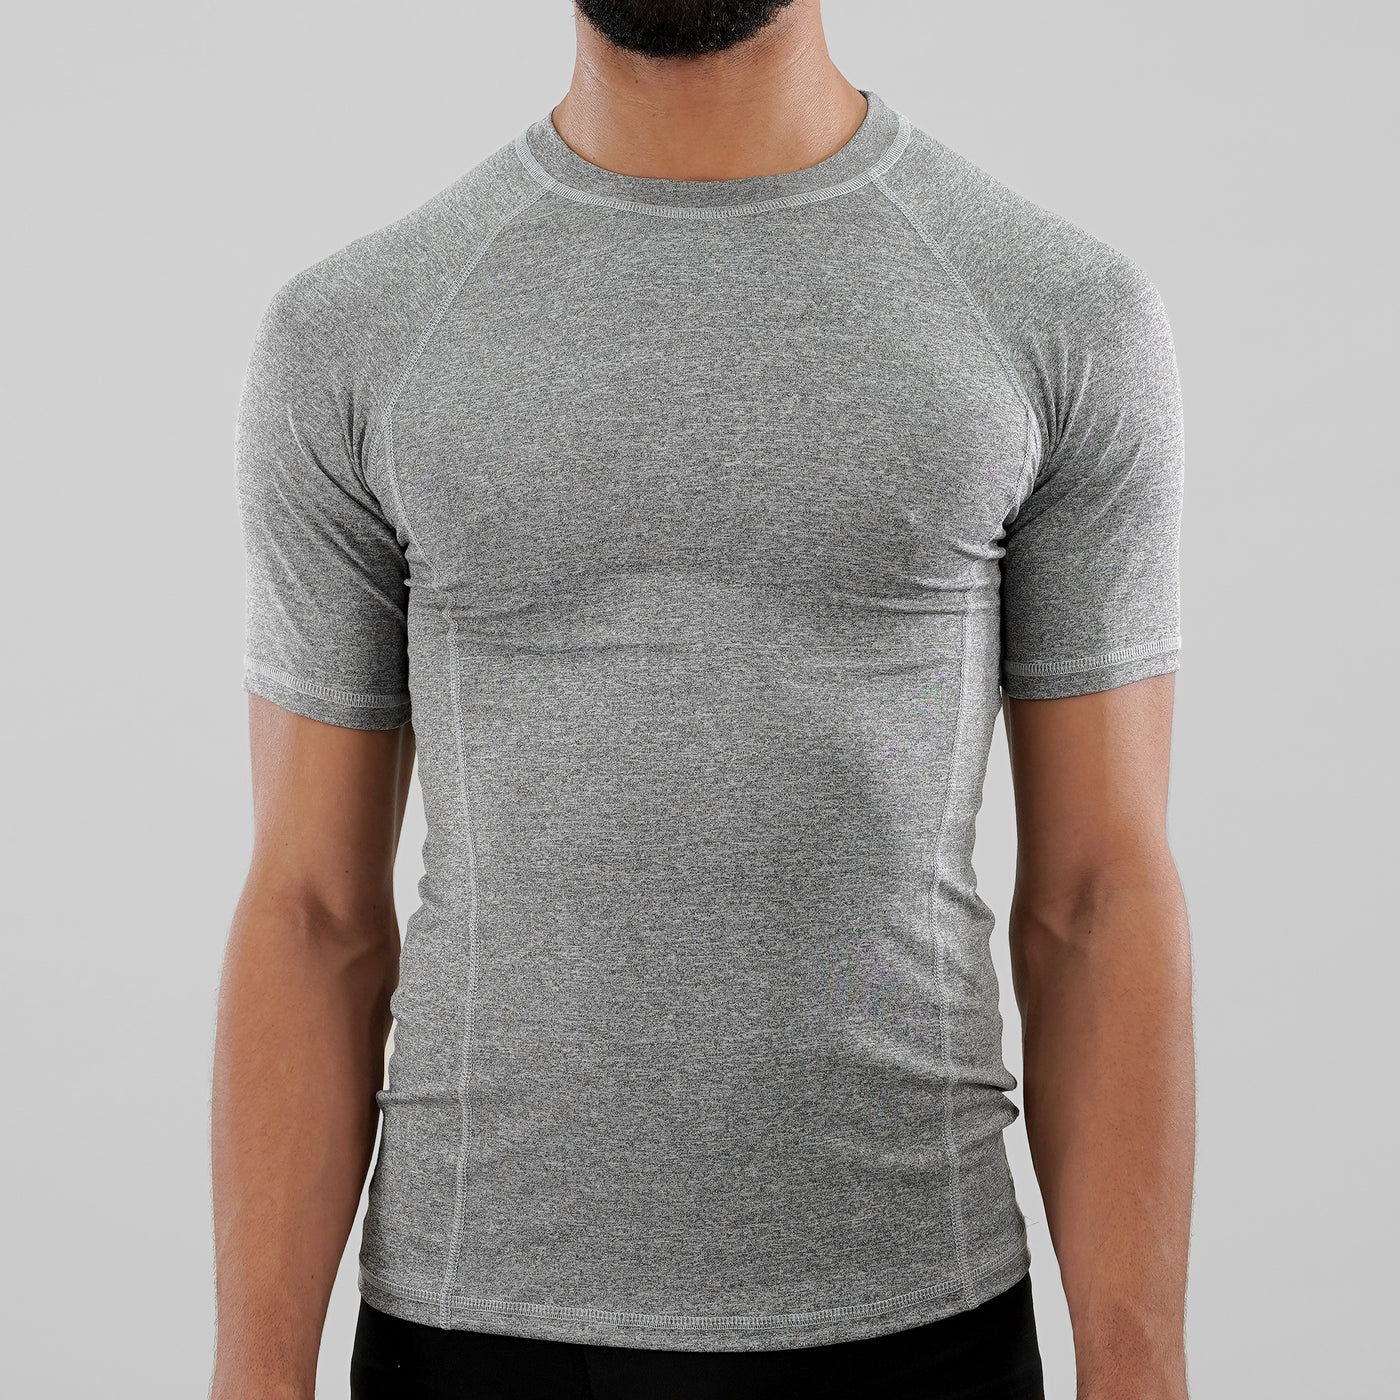 Melange Gray Compression Shirt